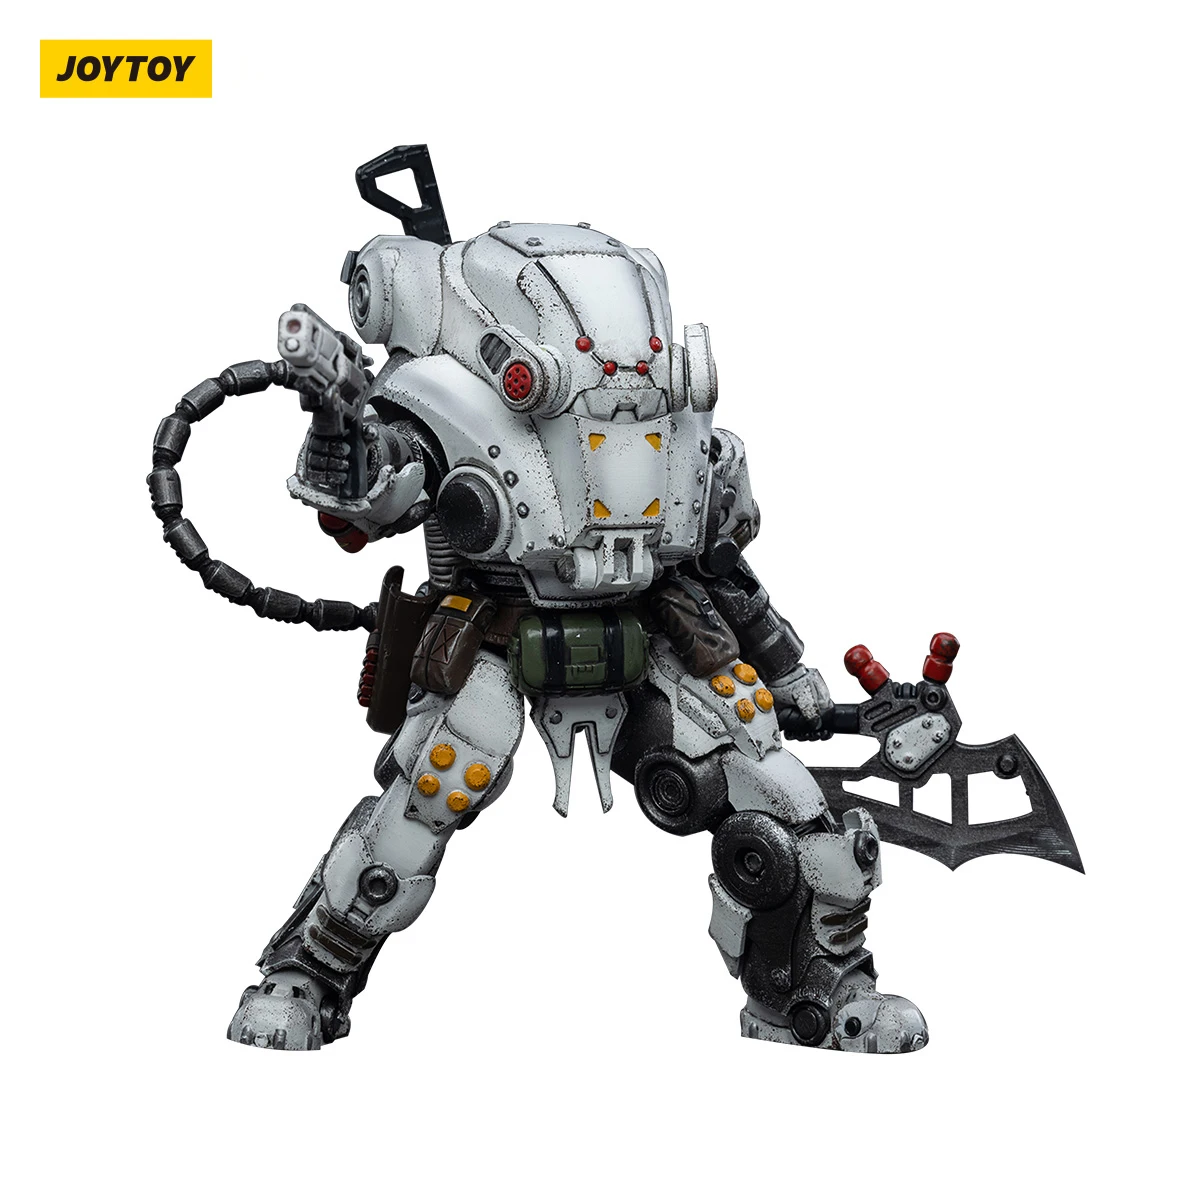 JOYTOY-figuras de acción de Mecha Warhammer, modelo de juguetes 1/18, eliminador de fuerzas expedicionales de dolor 3